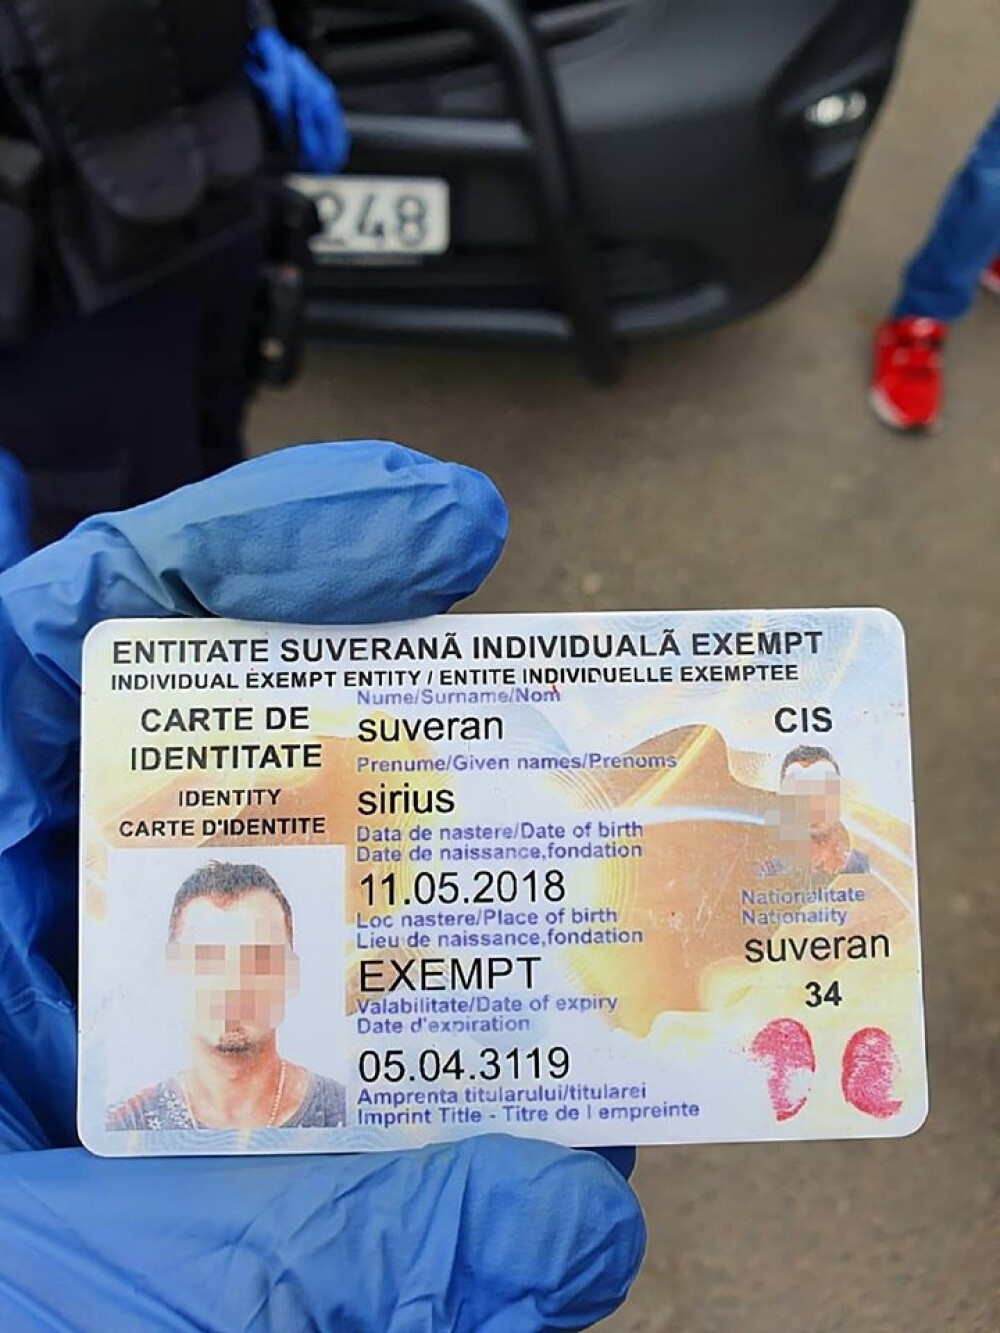 Un bărbat din București a refuzat legitimarea motivând că este ”suveran” - Imaginea 1